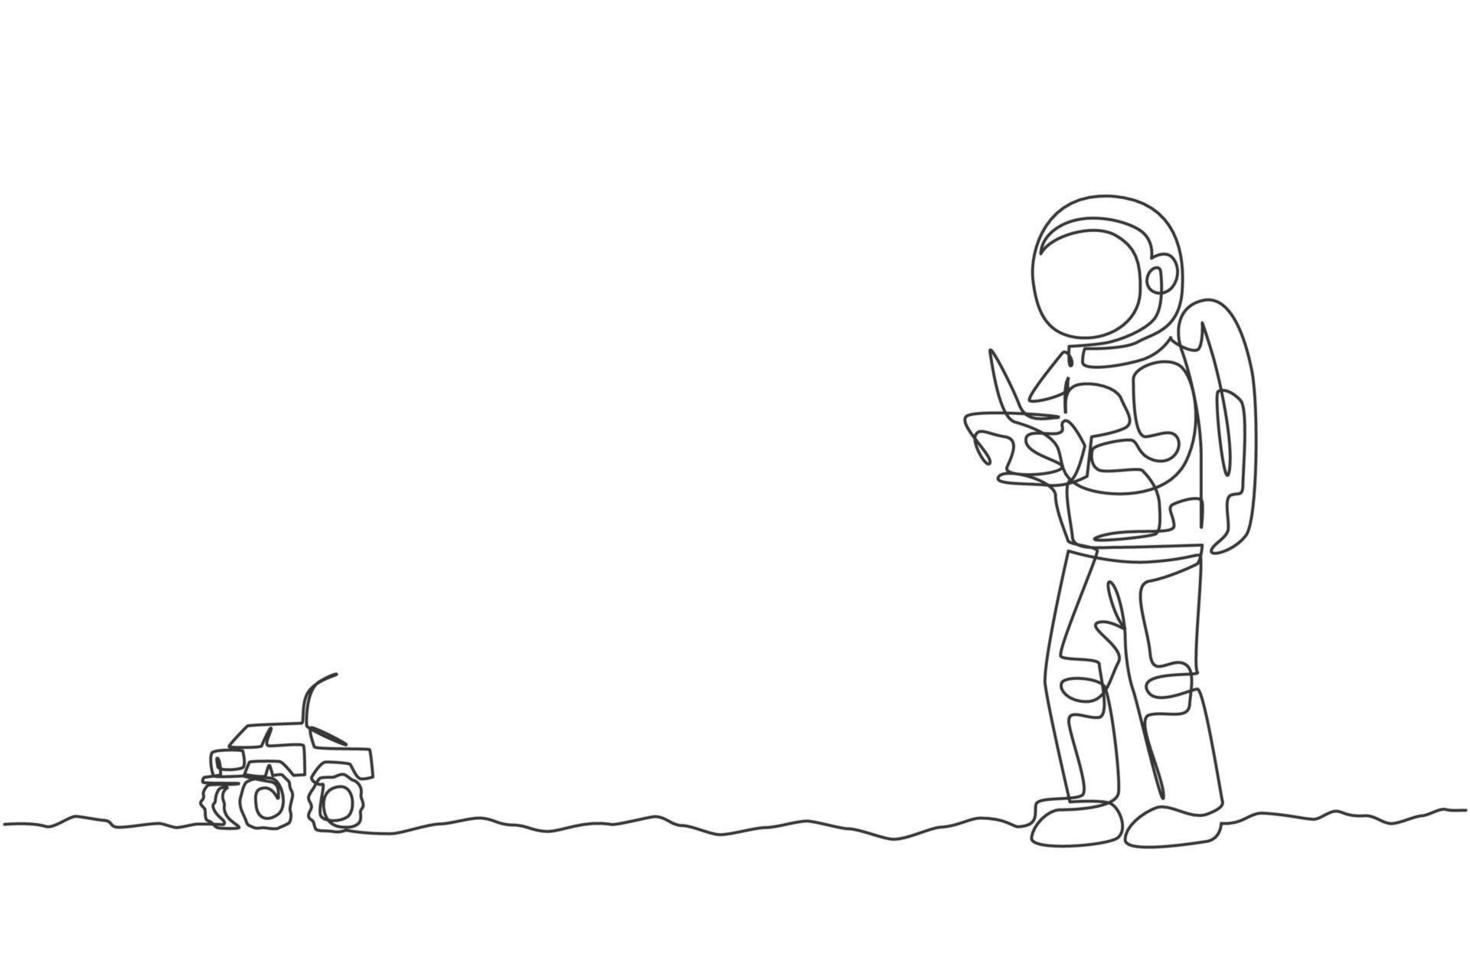 Astronauta de dibujo de línea continua única jugando control de radio de camión monstruo en la superficie de la luna. divertirse en el tiempo libre en el concepto de espacio ultraterrestre. Ilustración de vector de diseño gráfico de dibujo de una línea de moda